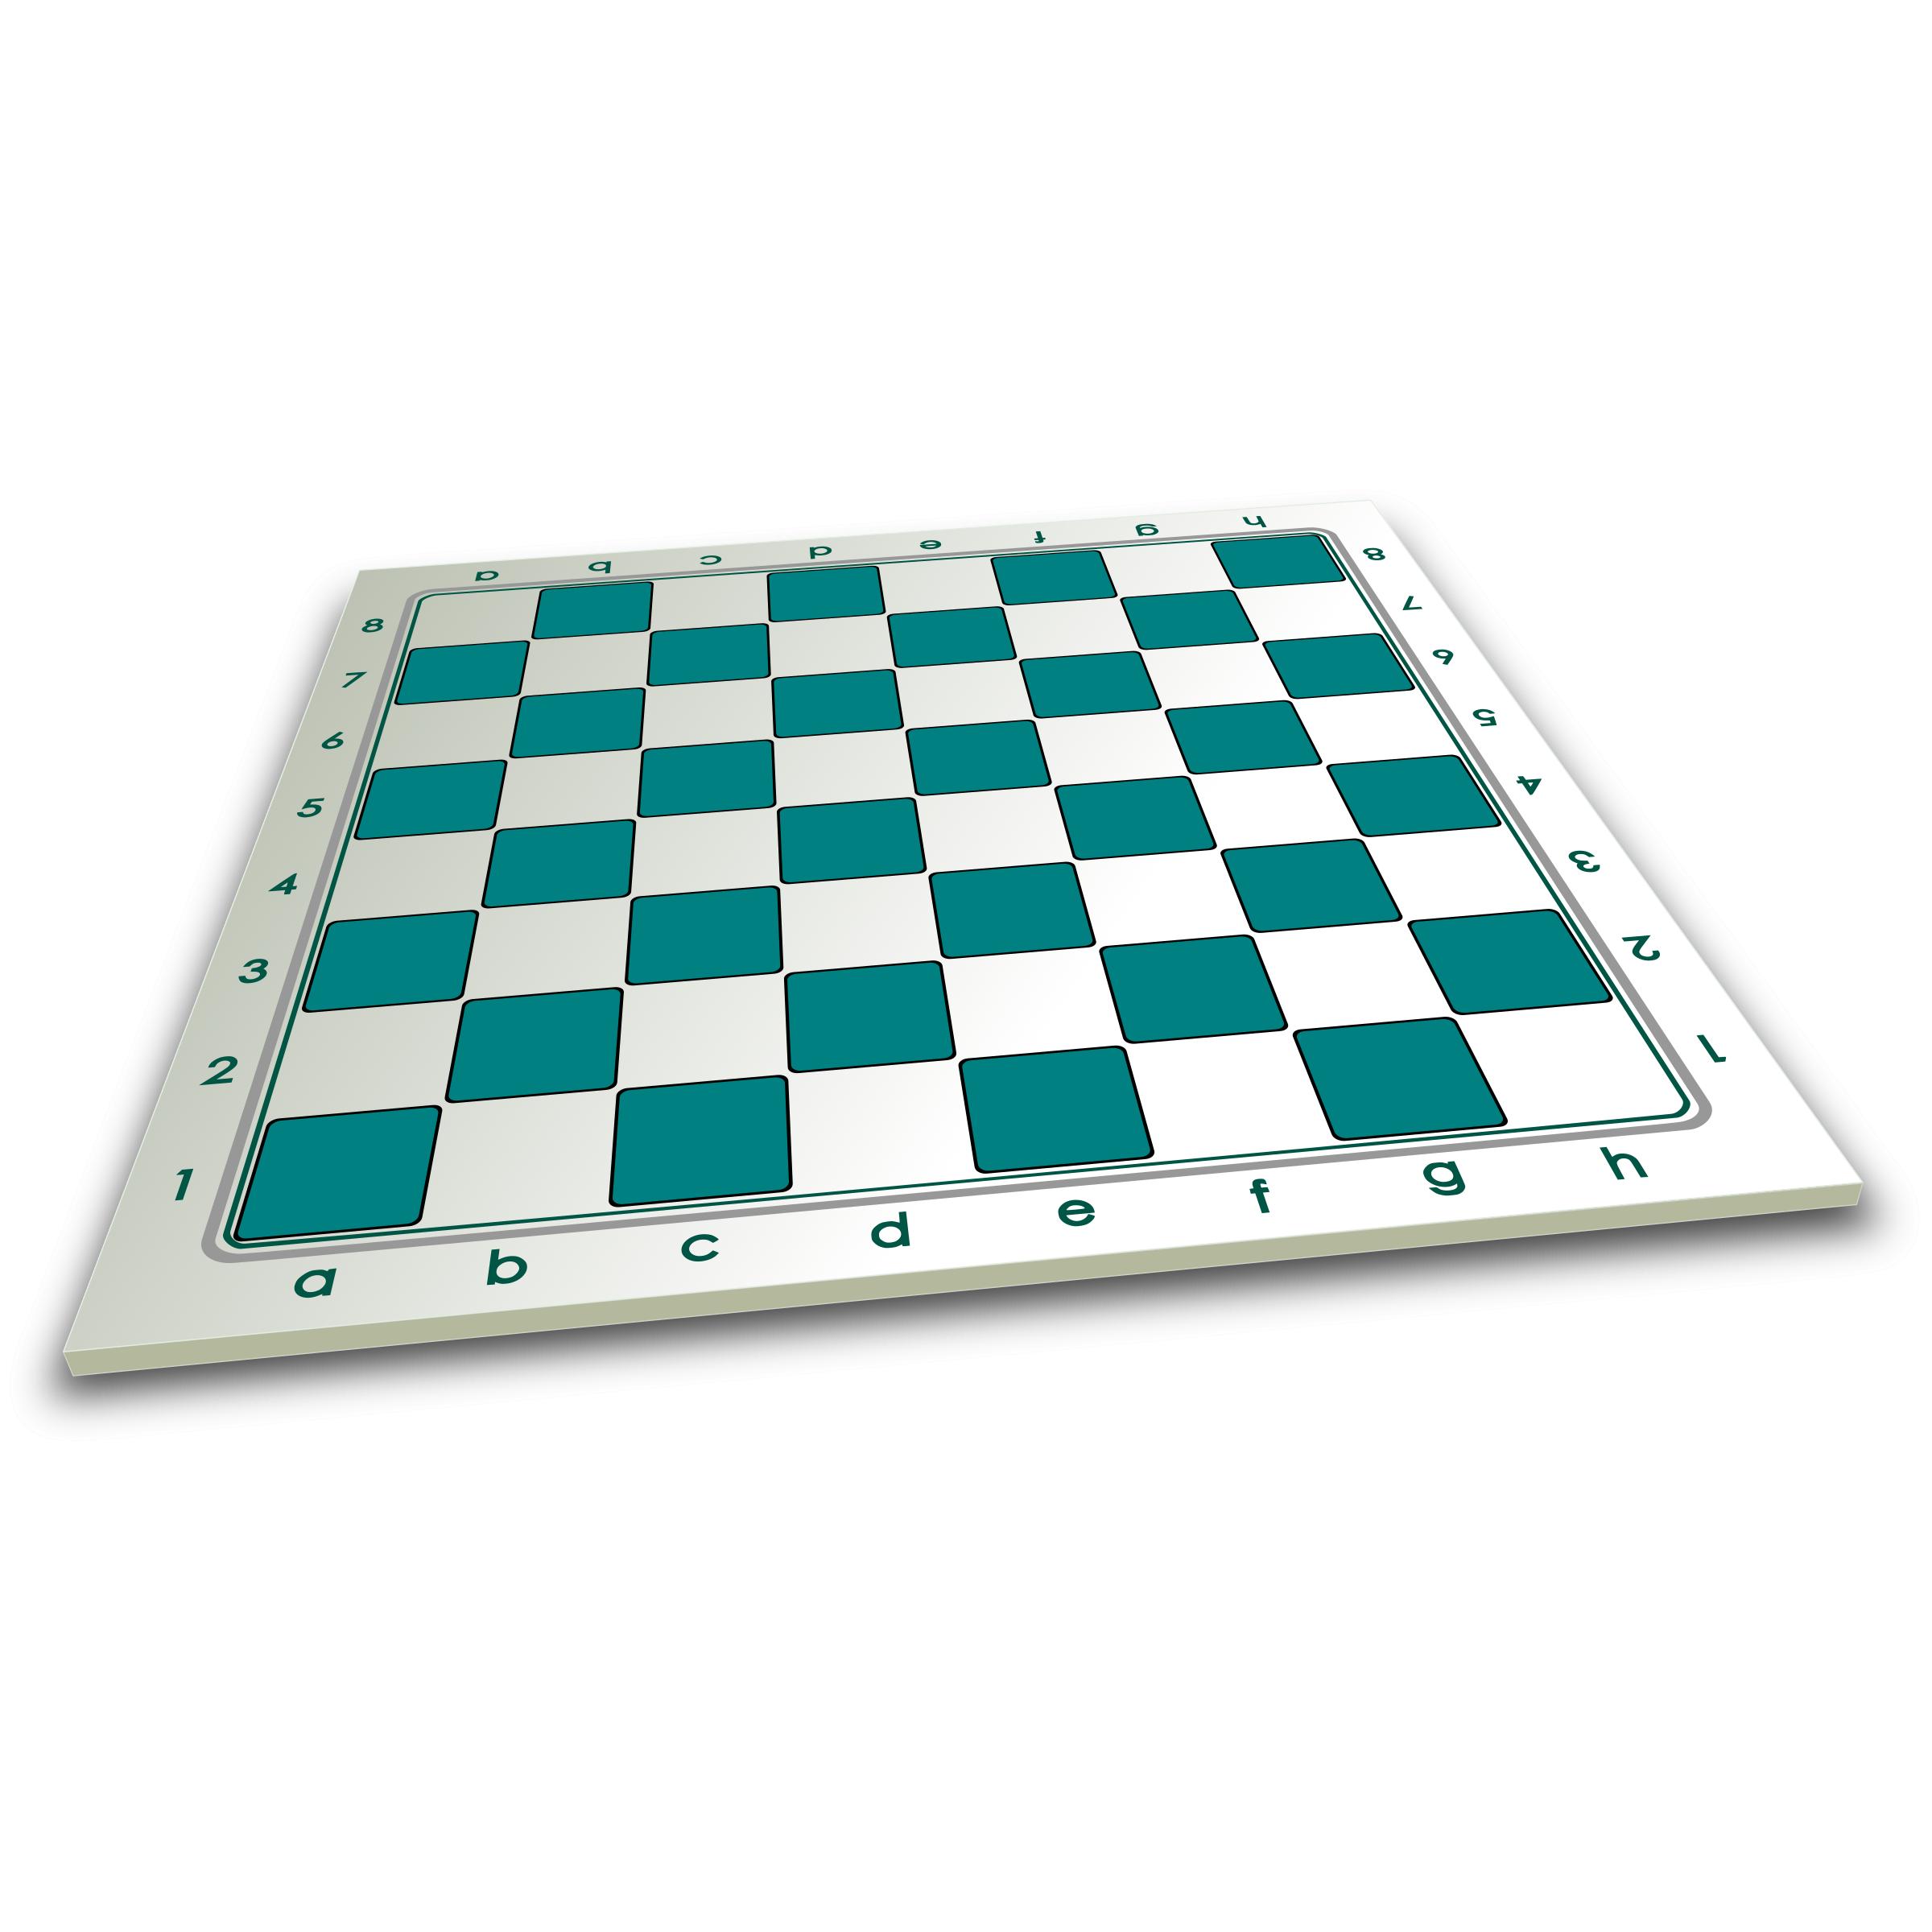 Chessboard in perspective 3D / Tablero en Perspectiva png